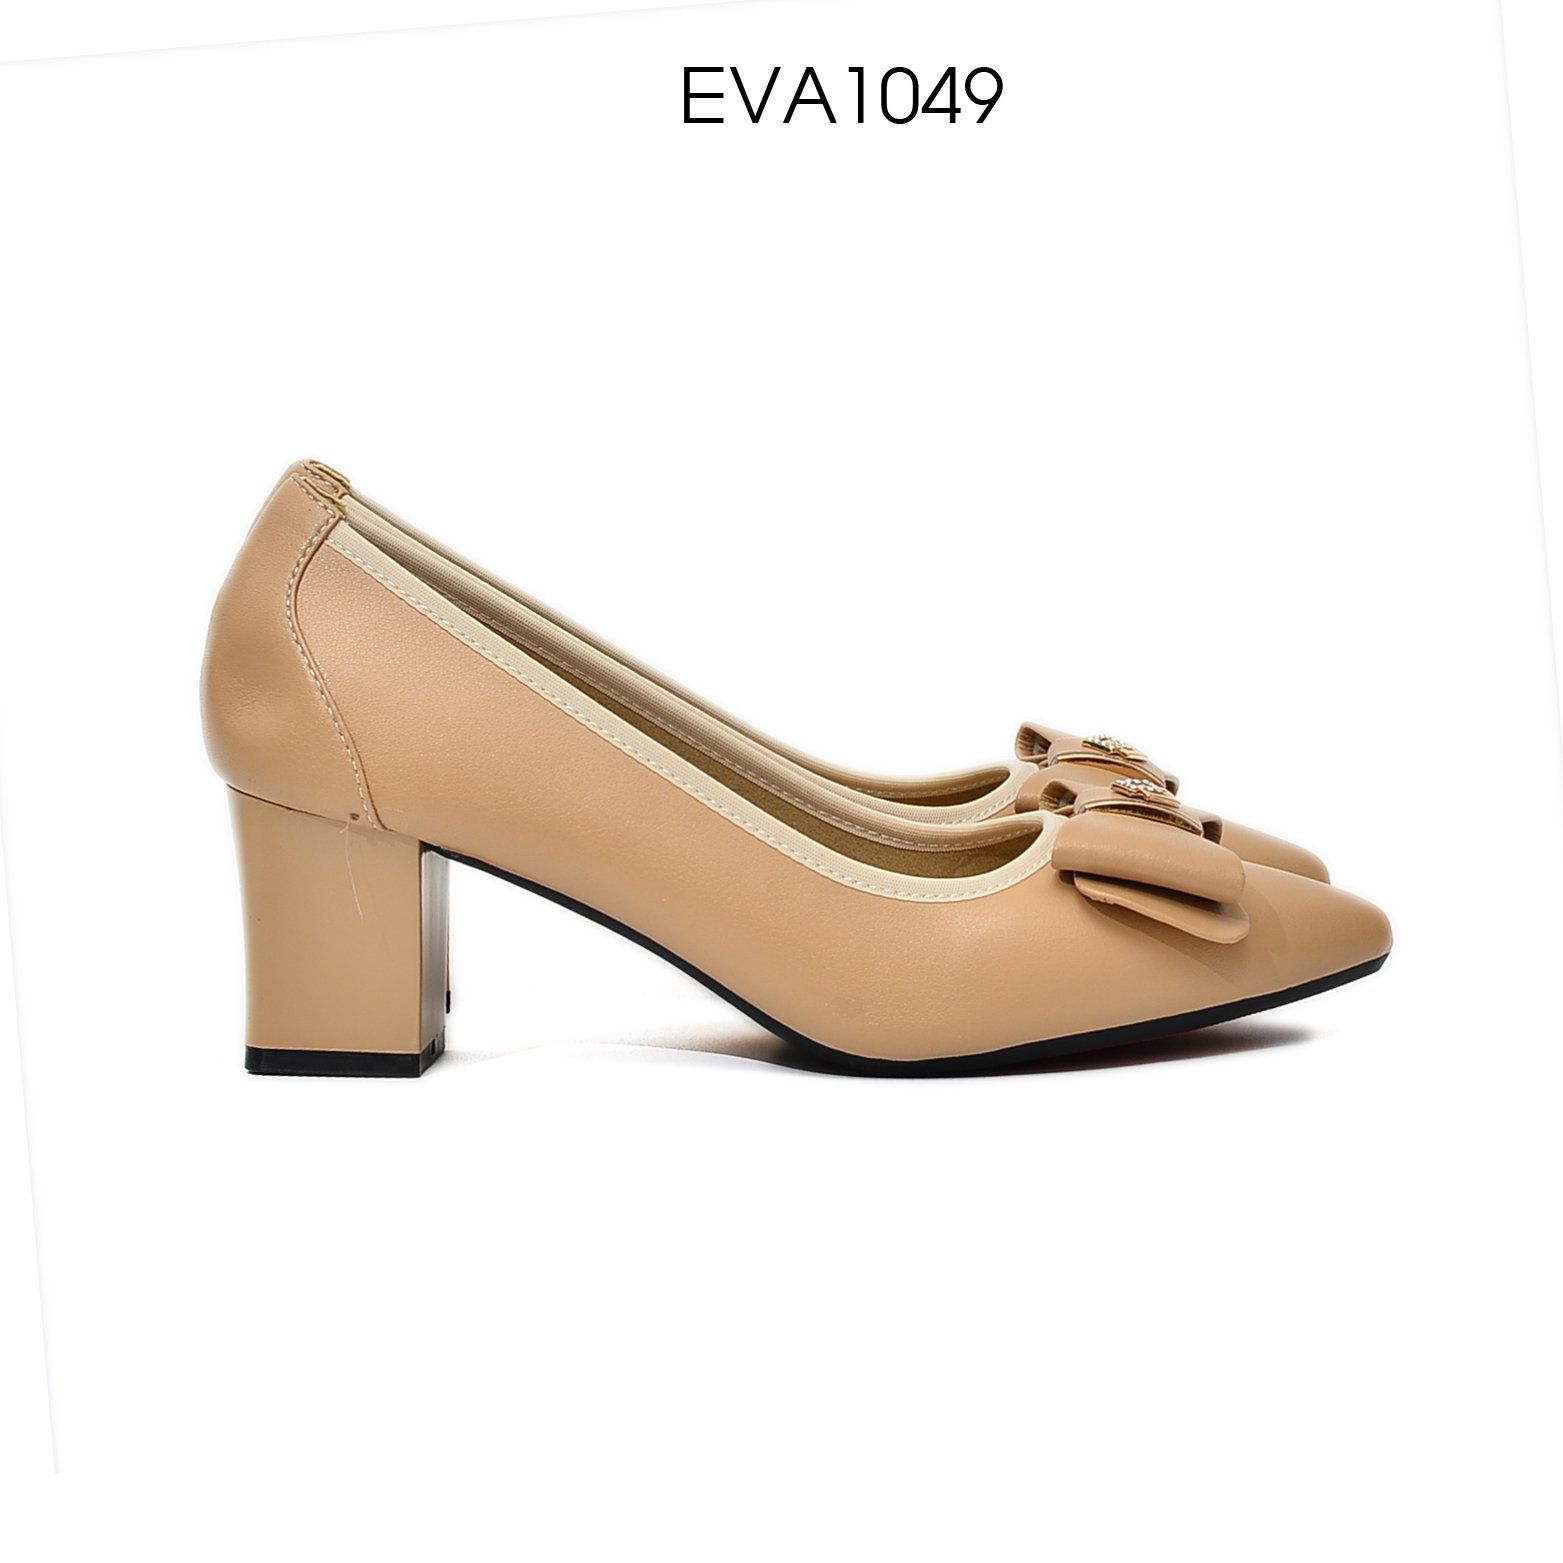 Giày cao gót 4cm Eva1049